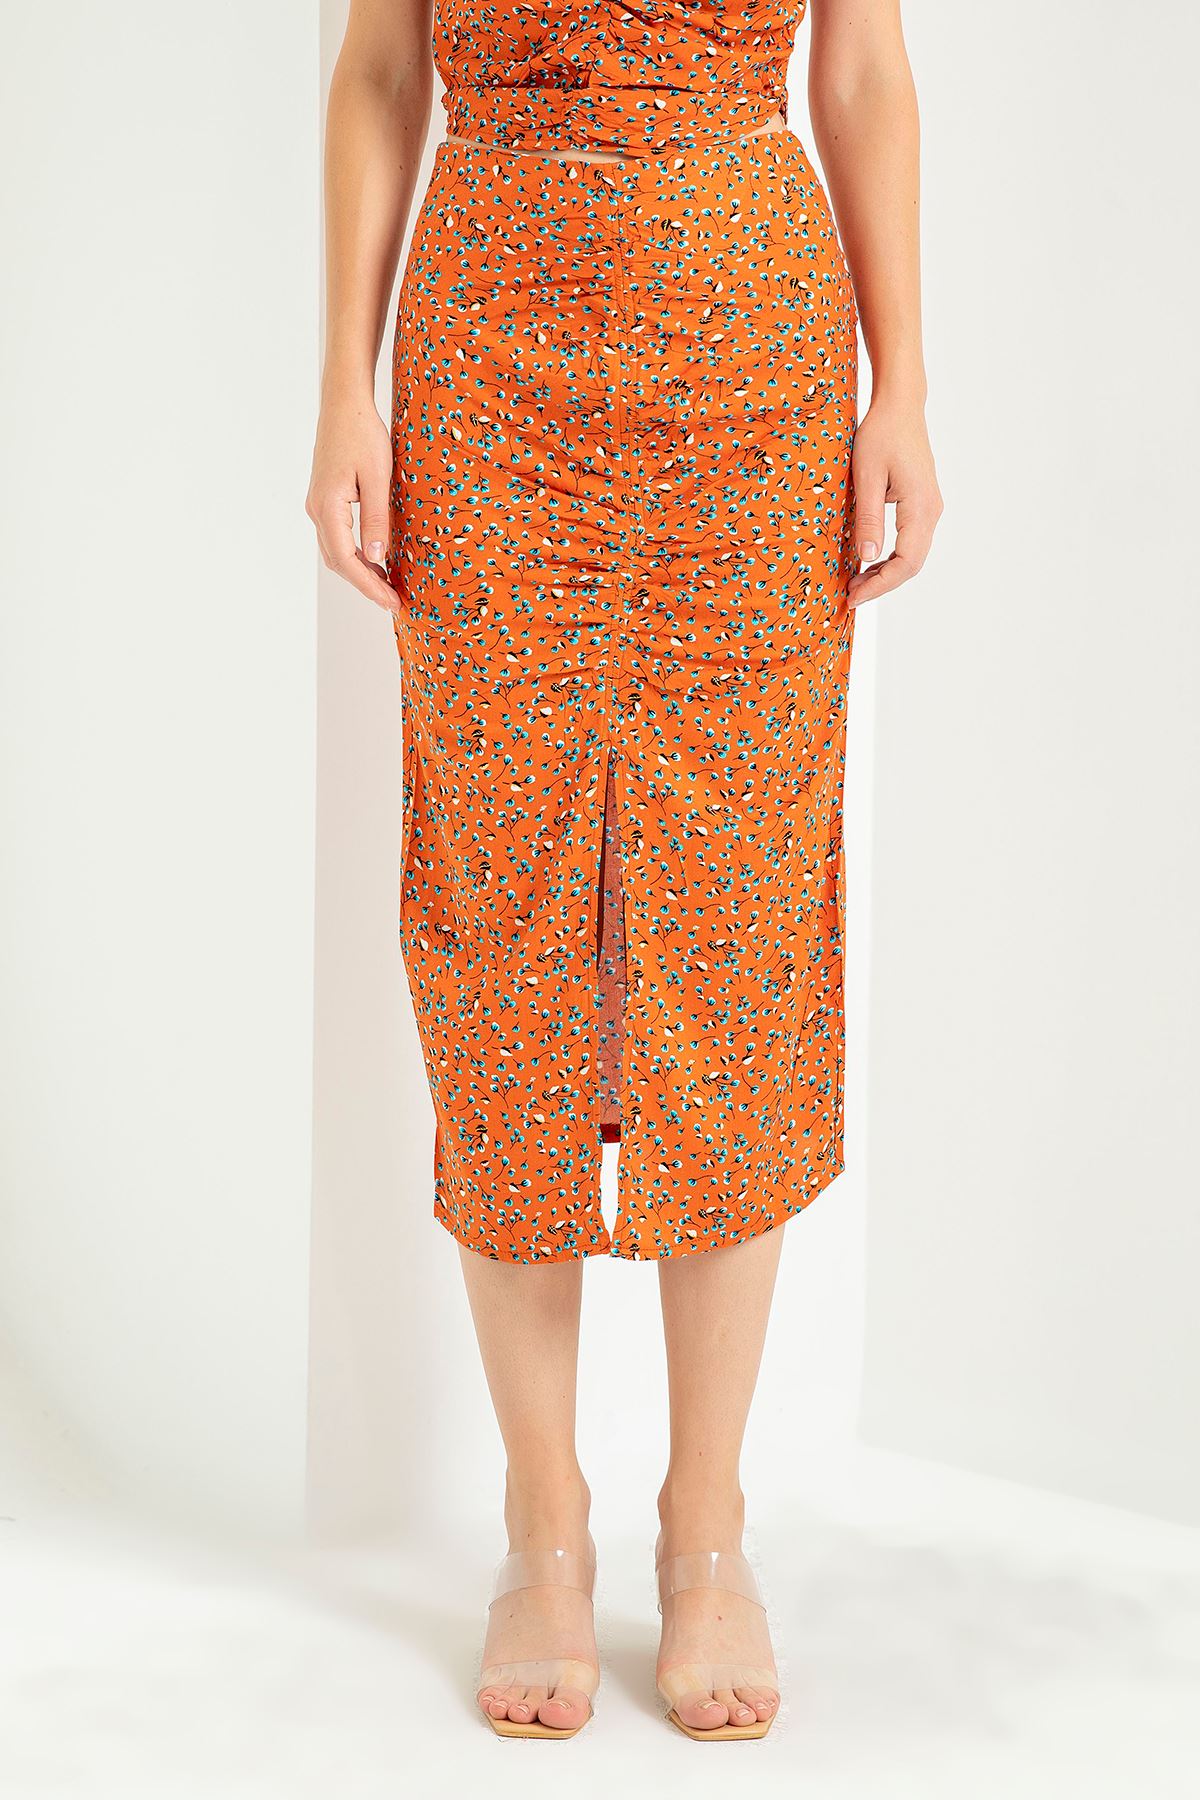 цветочный принтниже колен прямая женская юбка - Оранжевый